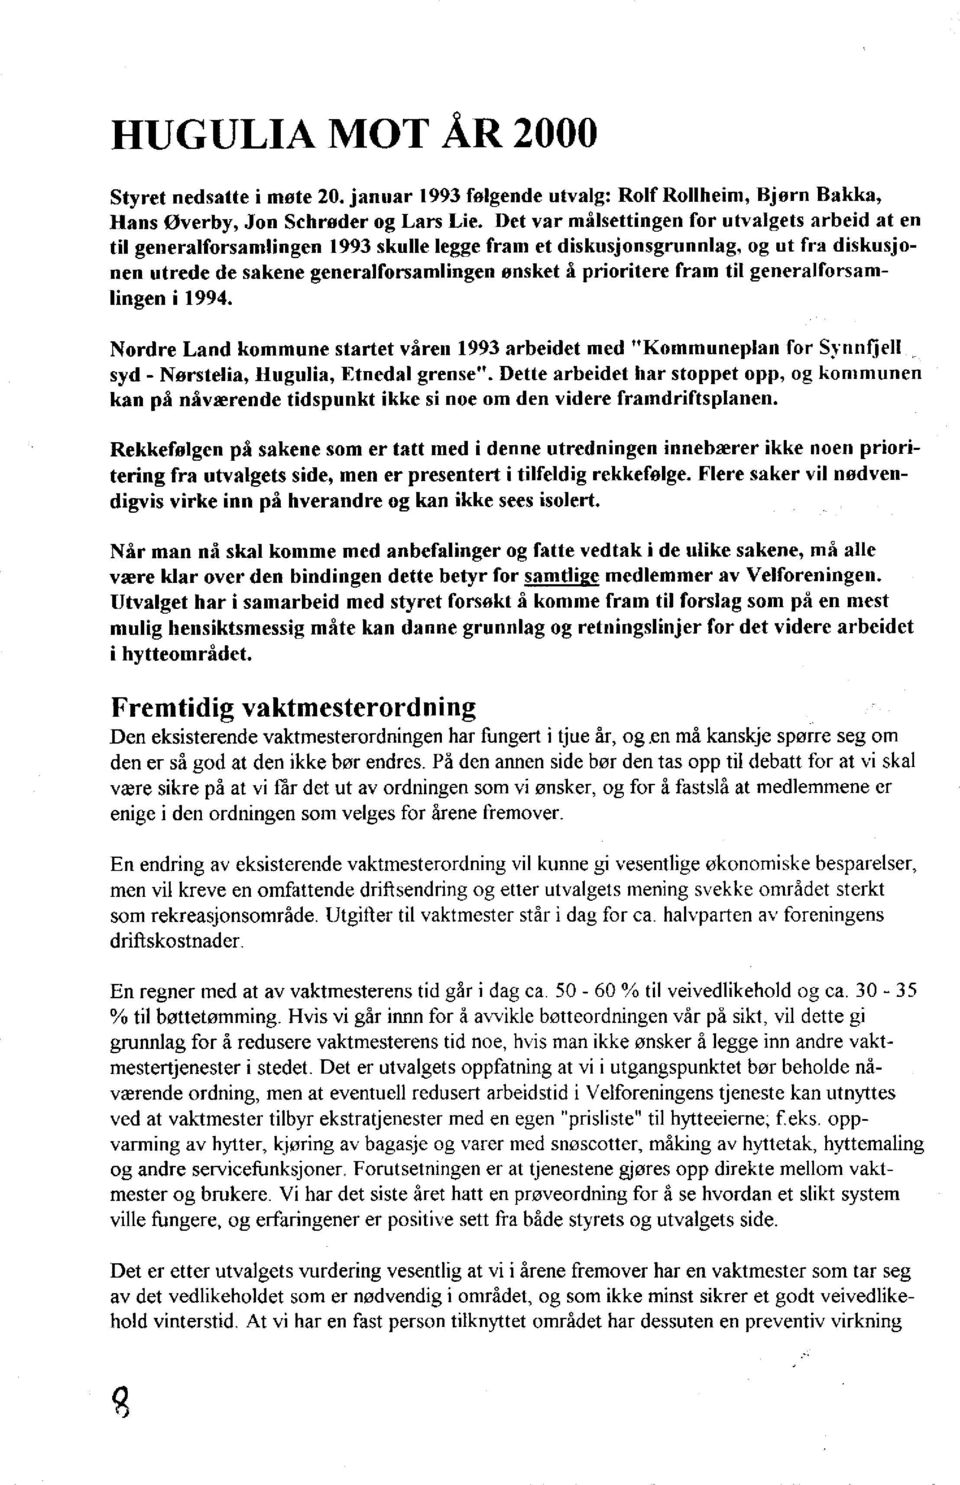 fram til generalforsamlingen i 1994. Nordre Land kommune startet våren 1993 arbeidet med "Kommuneplan for Synnfjell syd - Nørstelia, Hugulia, Etnedal grense".